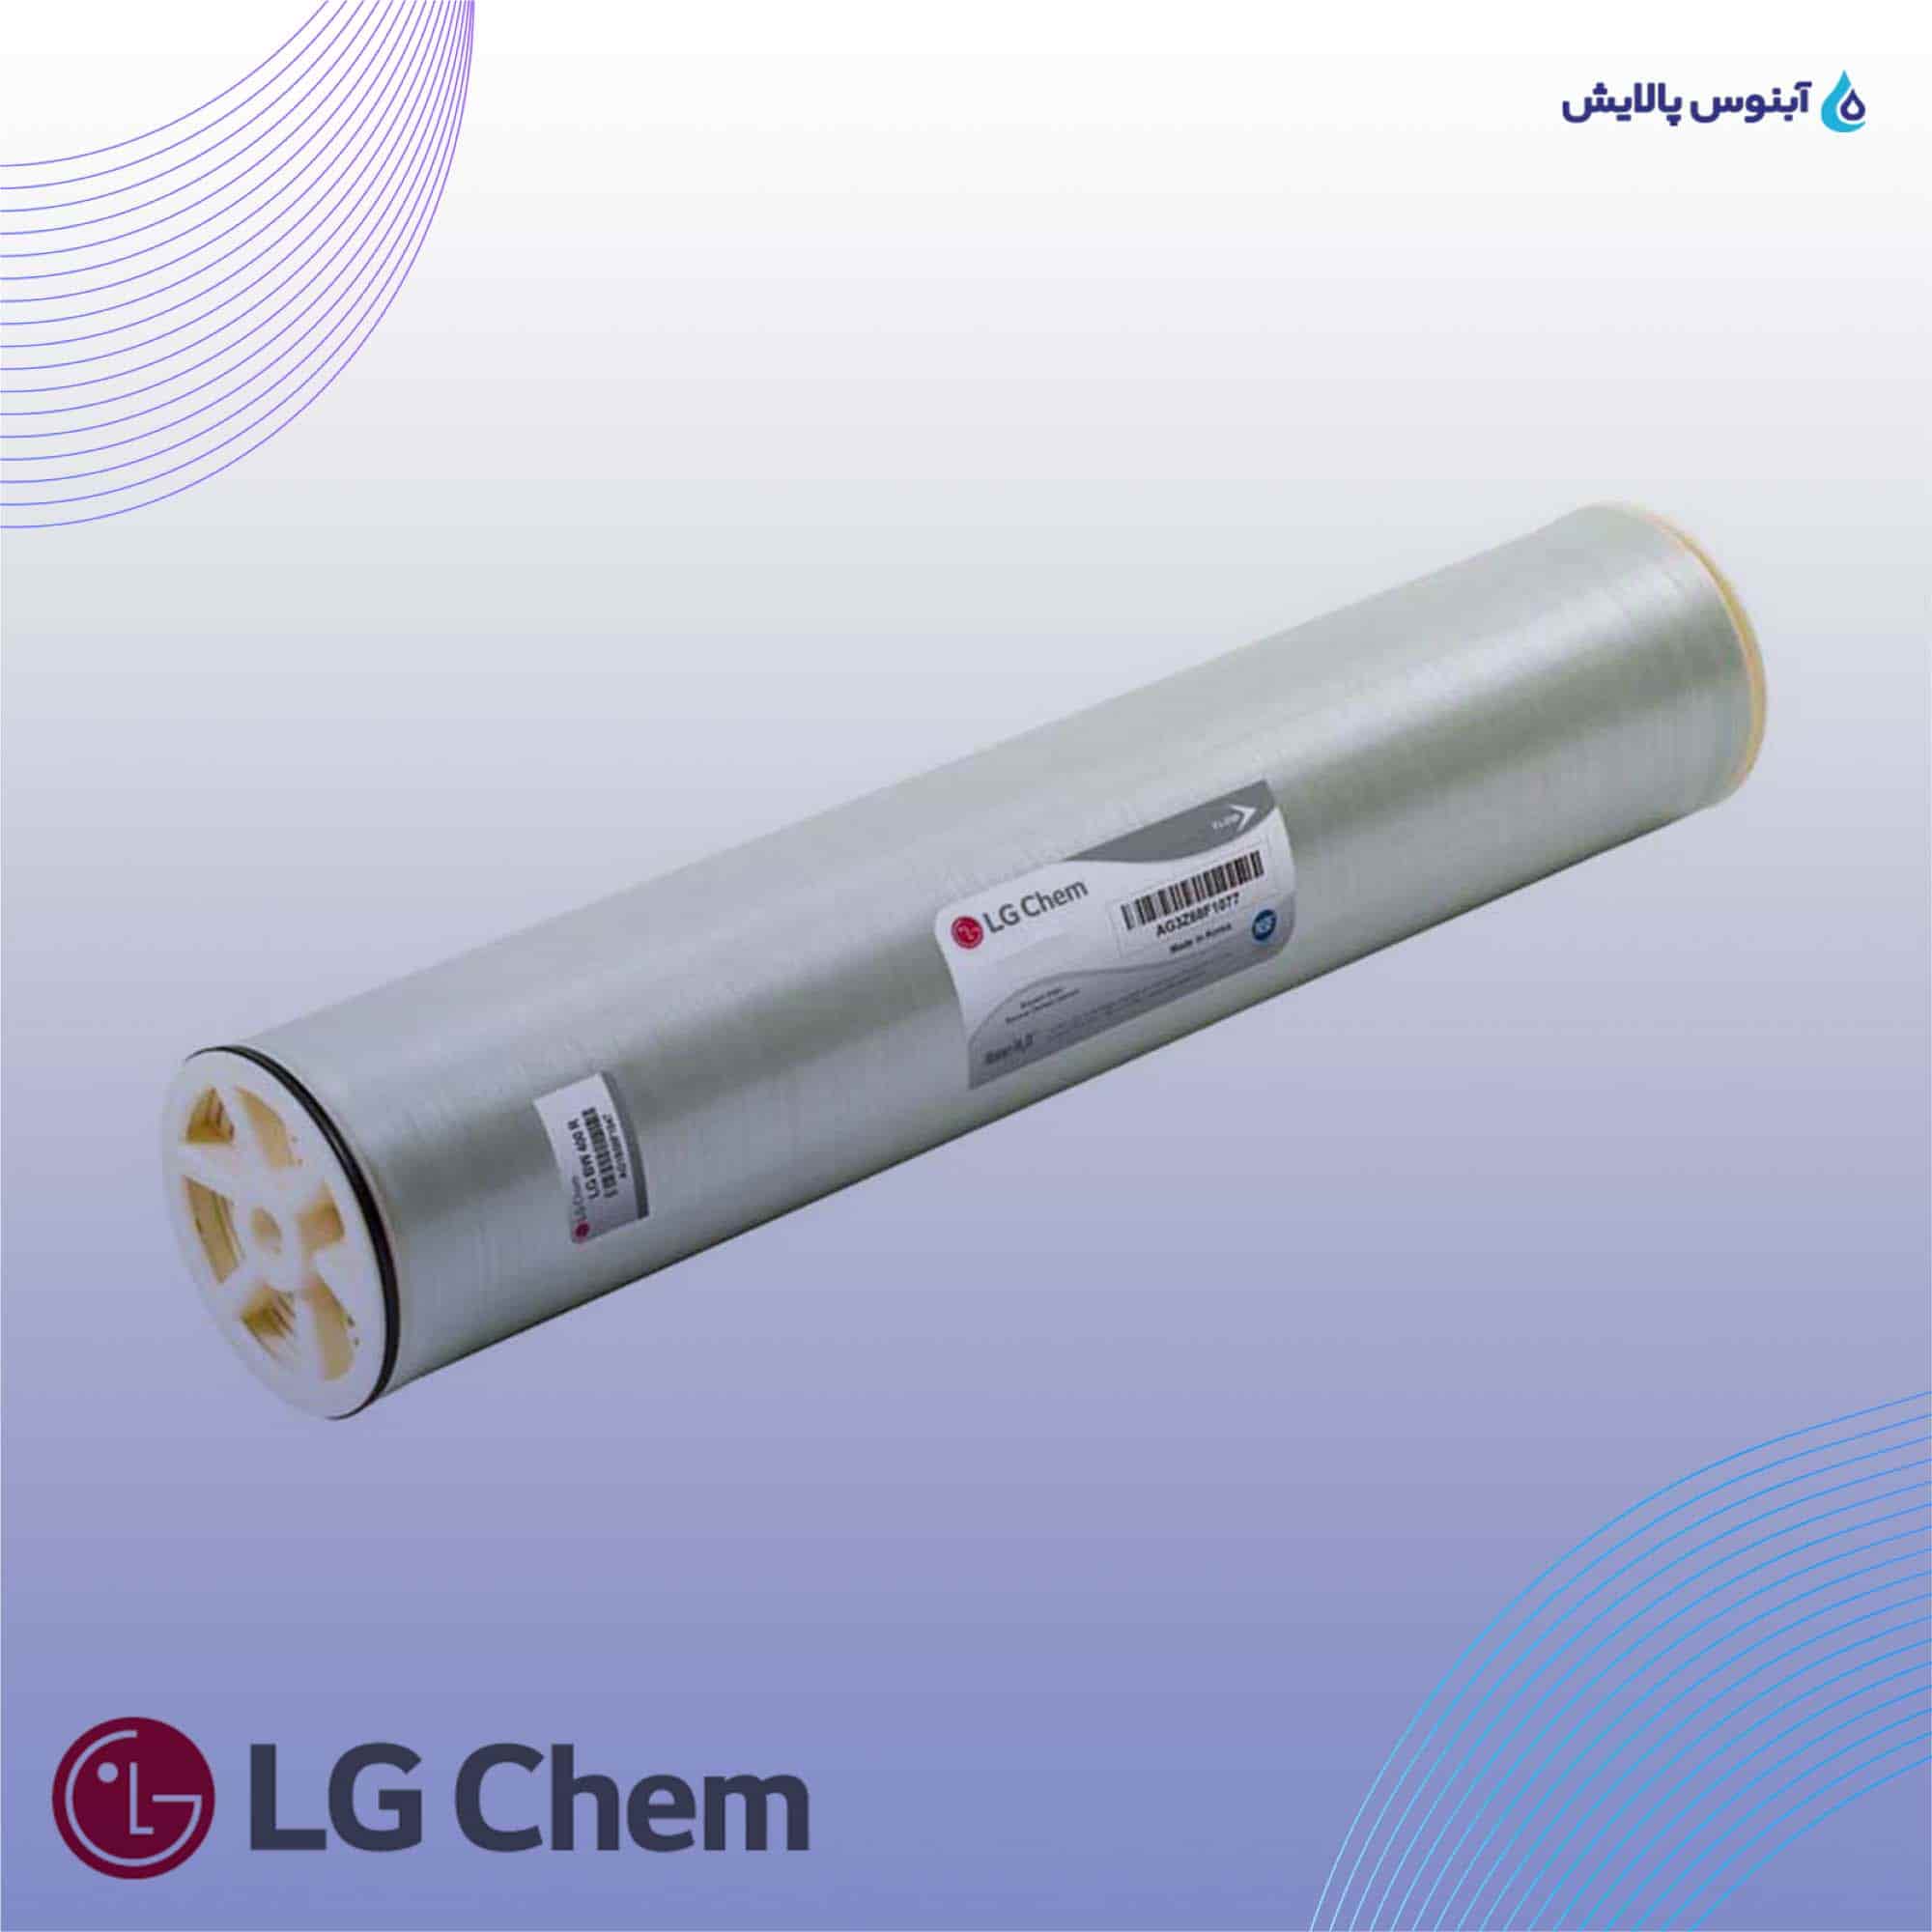 ممبران دریایی 8 اینچ ال جی کم (LG Chem) مدل LG SW 440 SR